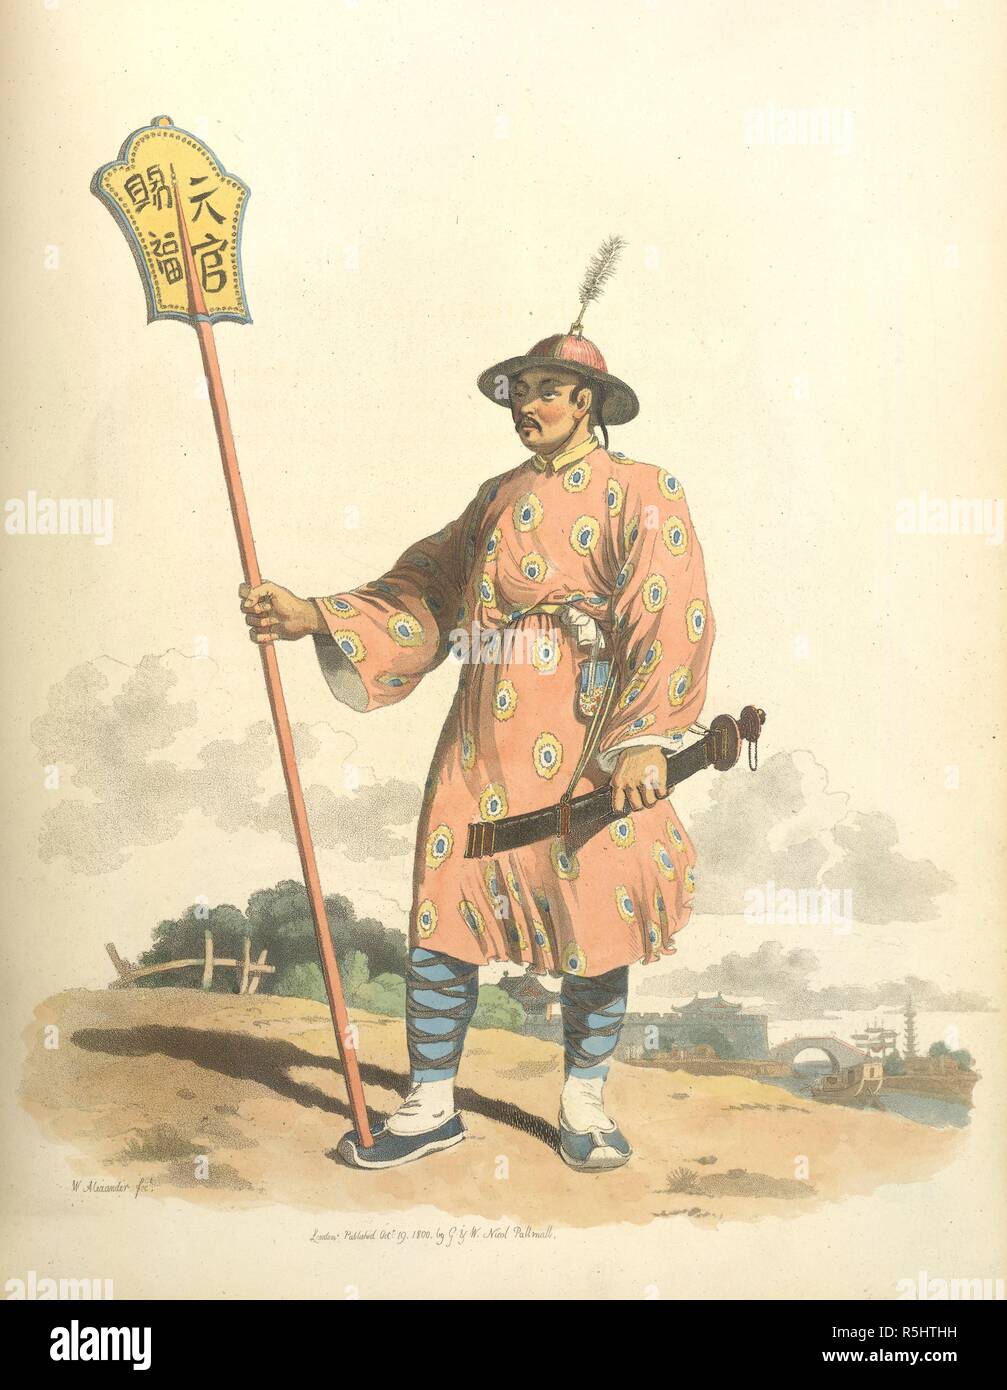 Un porte bannière. Le Costume de la Chine. Illustré dans quarante-huit c. William Miller : Londres, 1805. Selon le texte "un soldat travaillant dans un roulement standard, ou dorure, sur laquelle sont représentés des personnages, ce qui probablement afficher certains titre de l'empereur". "Sa robe est nankeen coton, qui est liée à la taille, à l'impérial ou ceinture jaune, et ses jambes sont contre-gartered : son chapeau de paille est la couronne est recouvert d'une frange de soie rouge. Son épée est comme customery avec les Chinois, est porté avec la garde derrière'. Image tirée du costume de la Chine. Illustré dans quarante-gie Banque D'Images